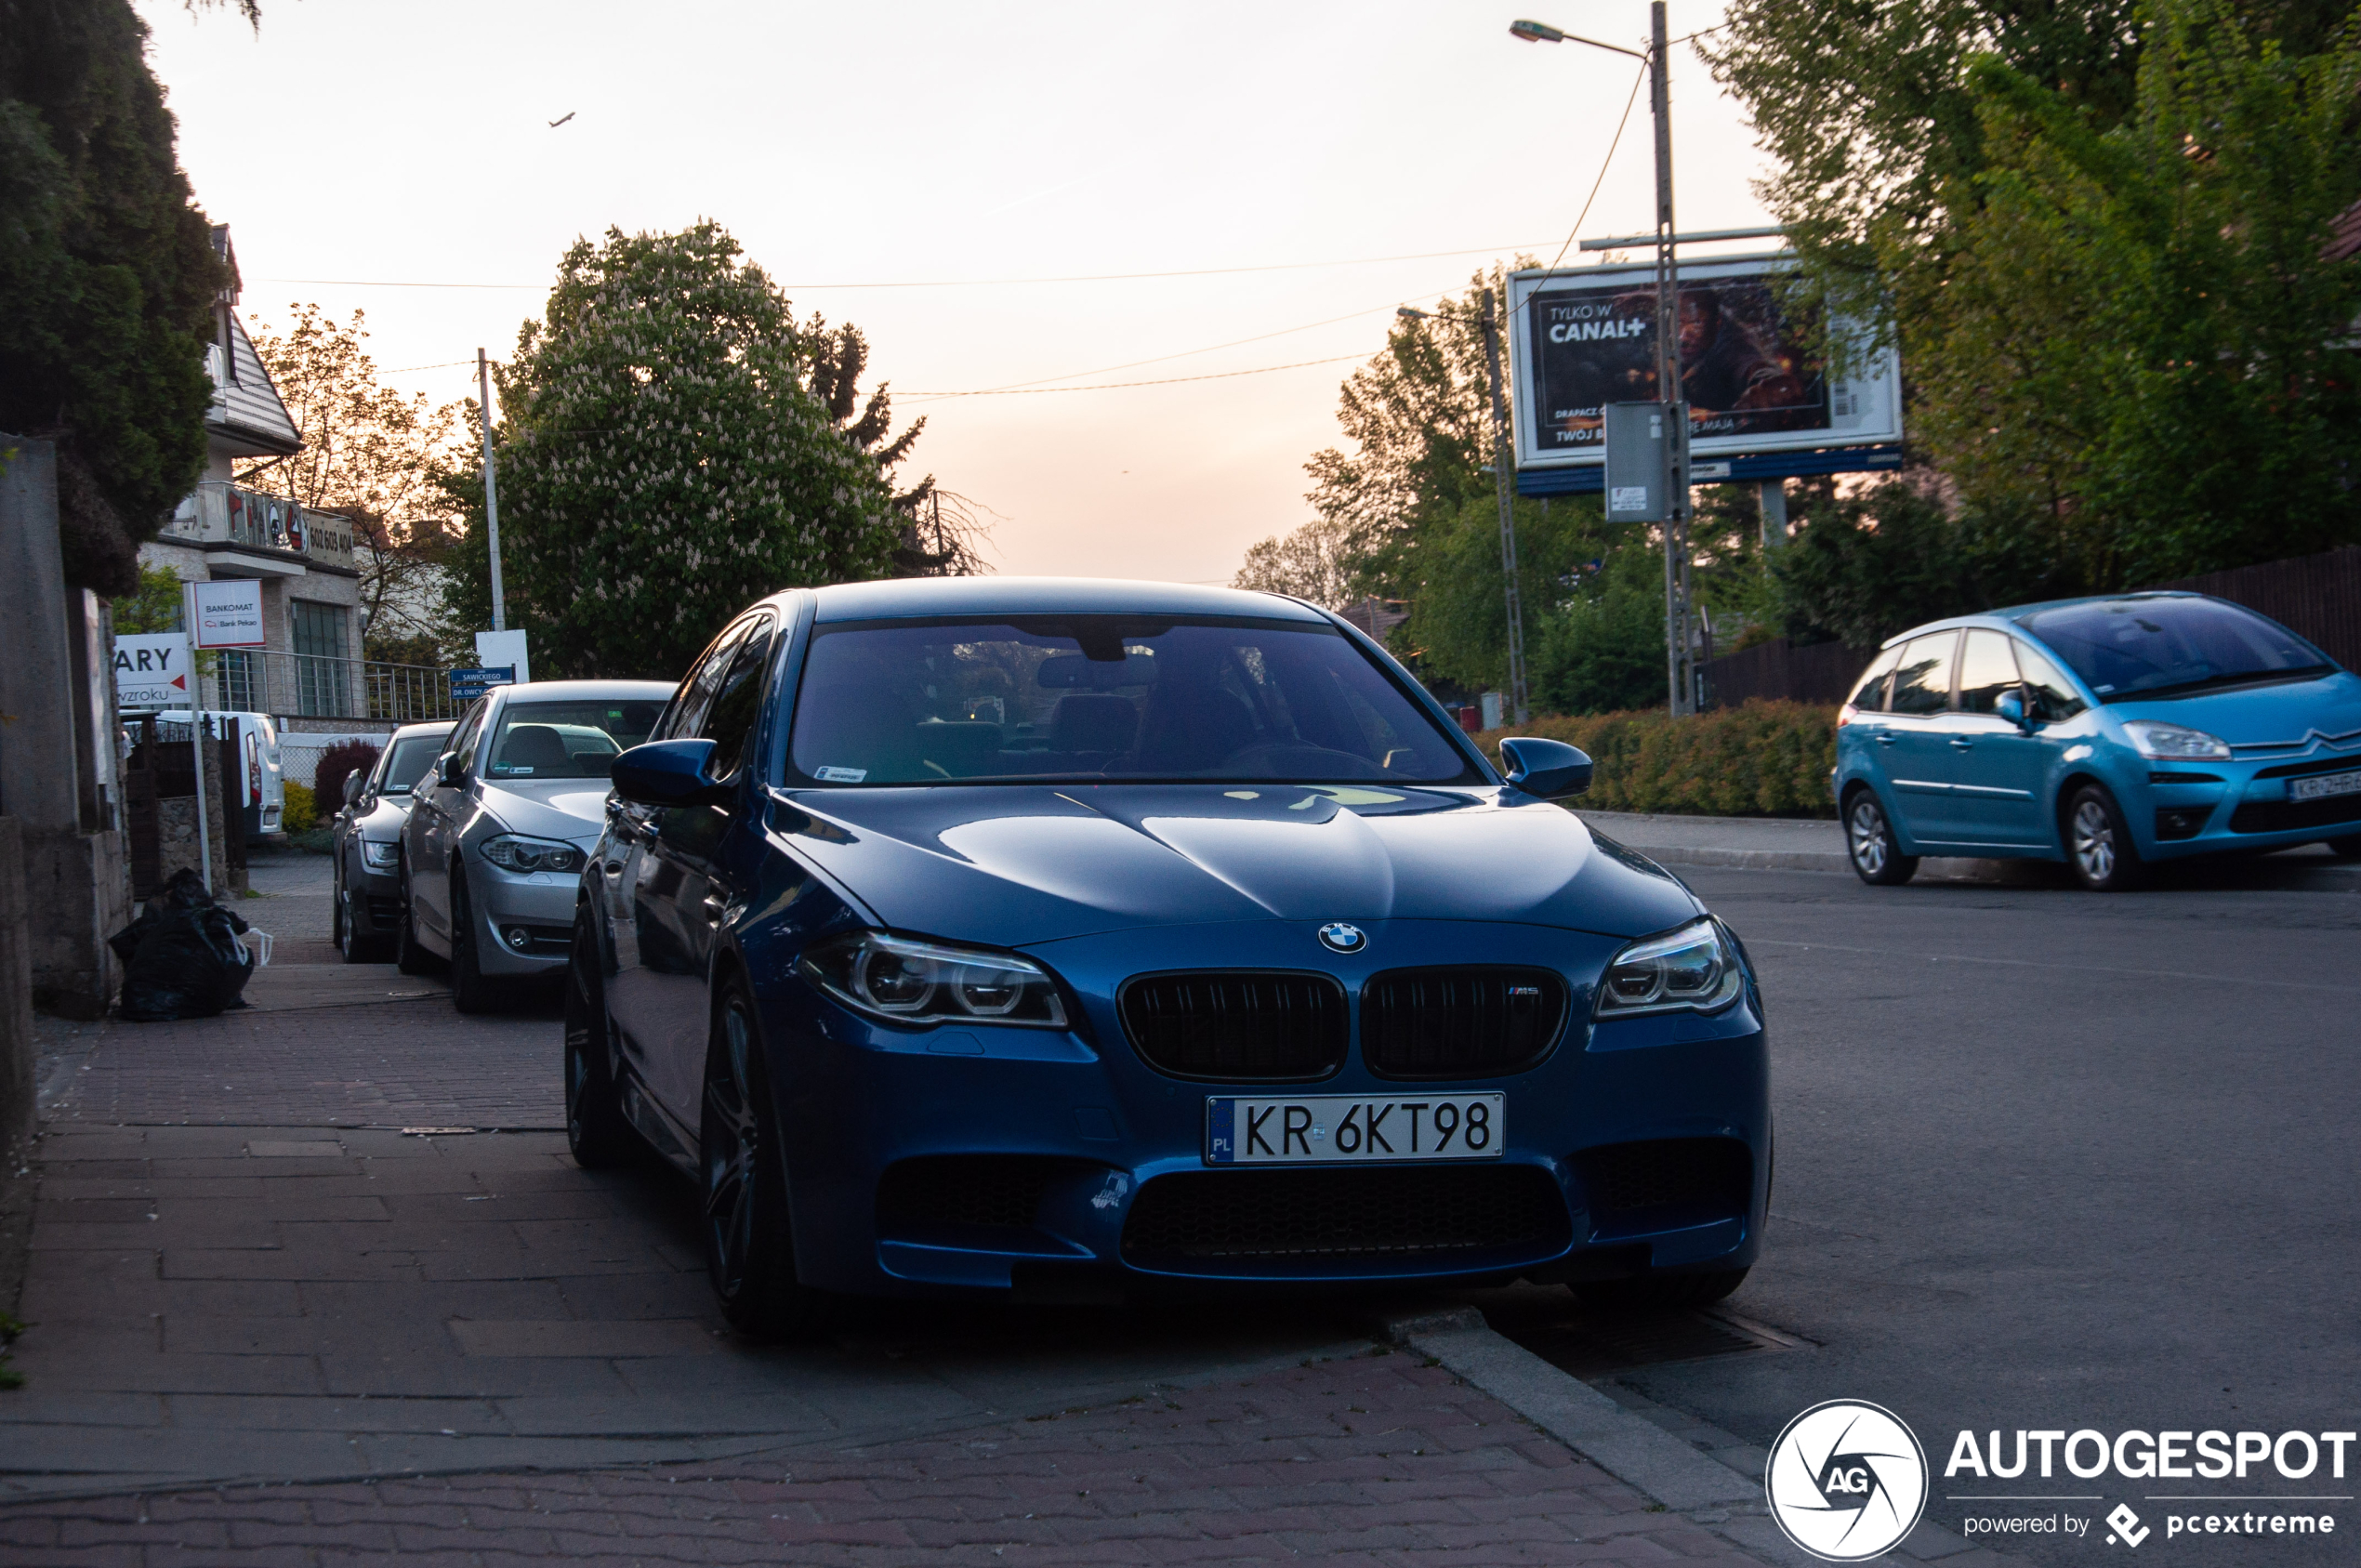 BMW M5 F10 2014 - 04-06-2020 03:20 - Autogespot